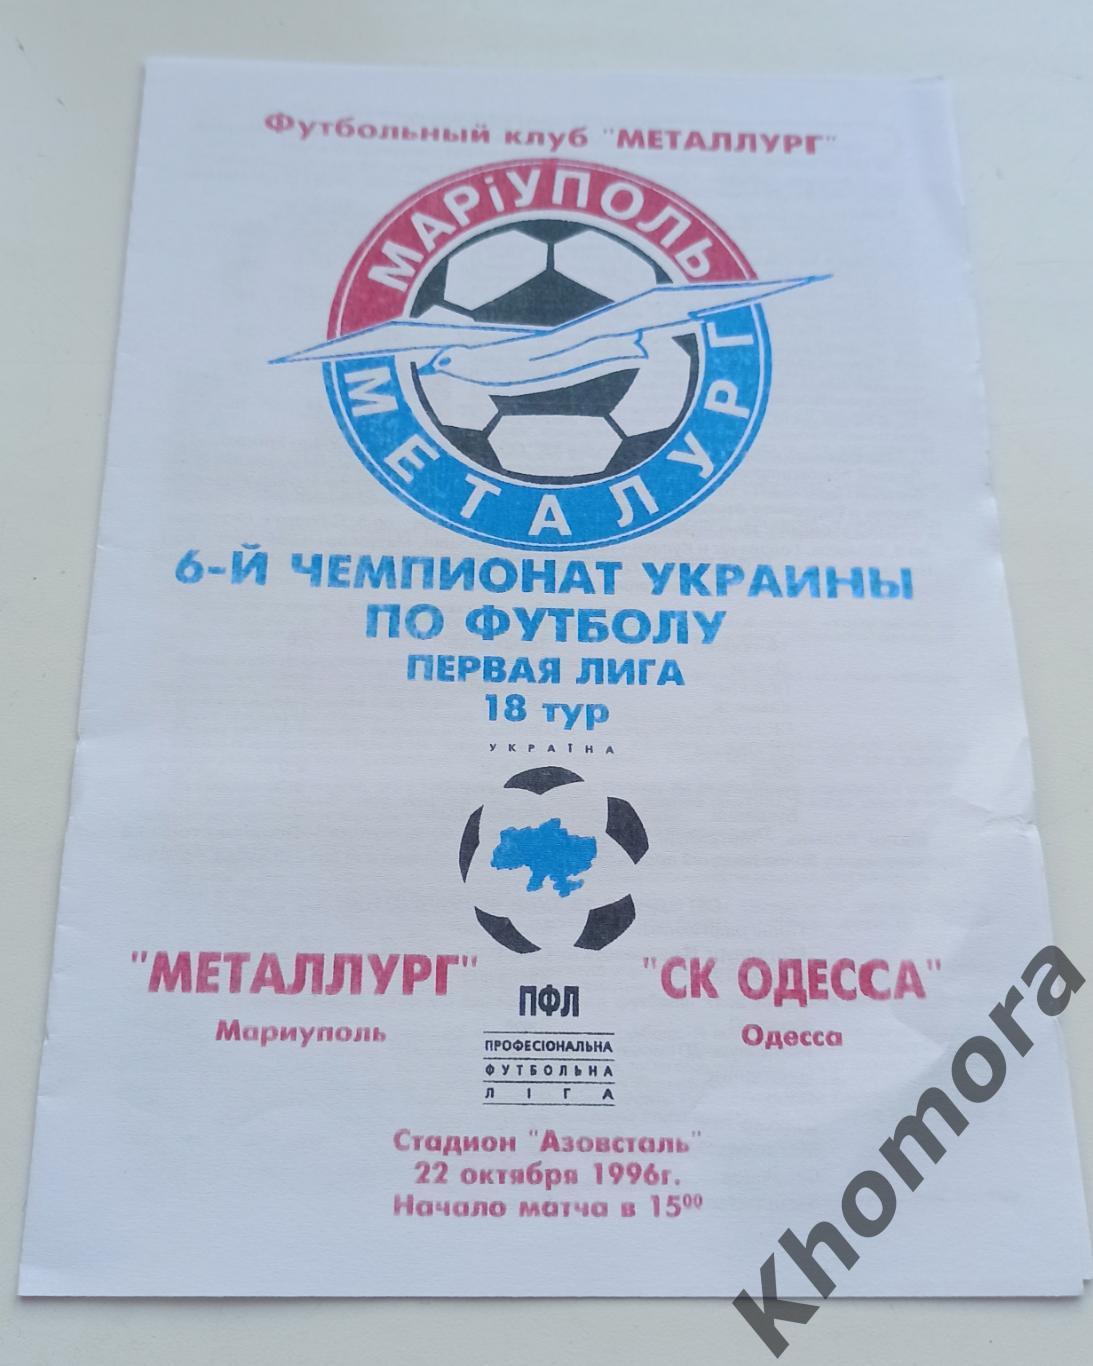 Металург (Мариуполь) - СК Одесса - 22.10.1996 - официальная программа